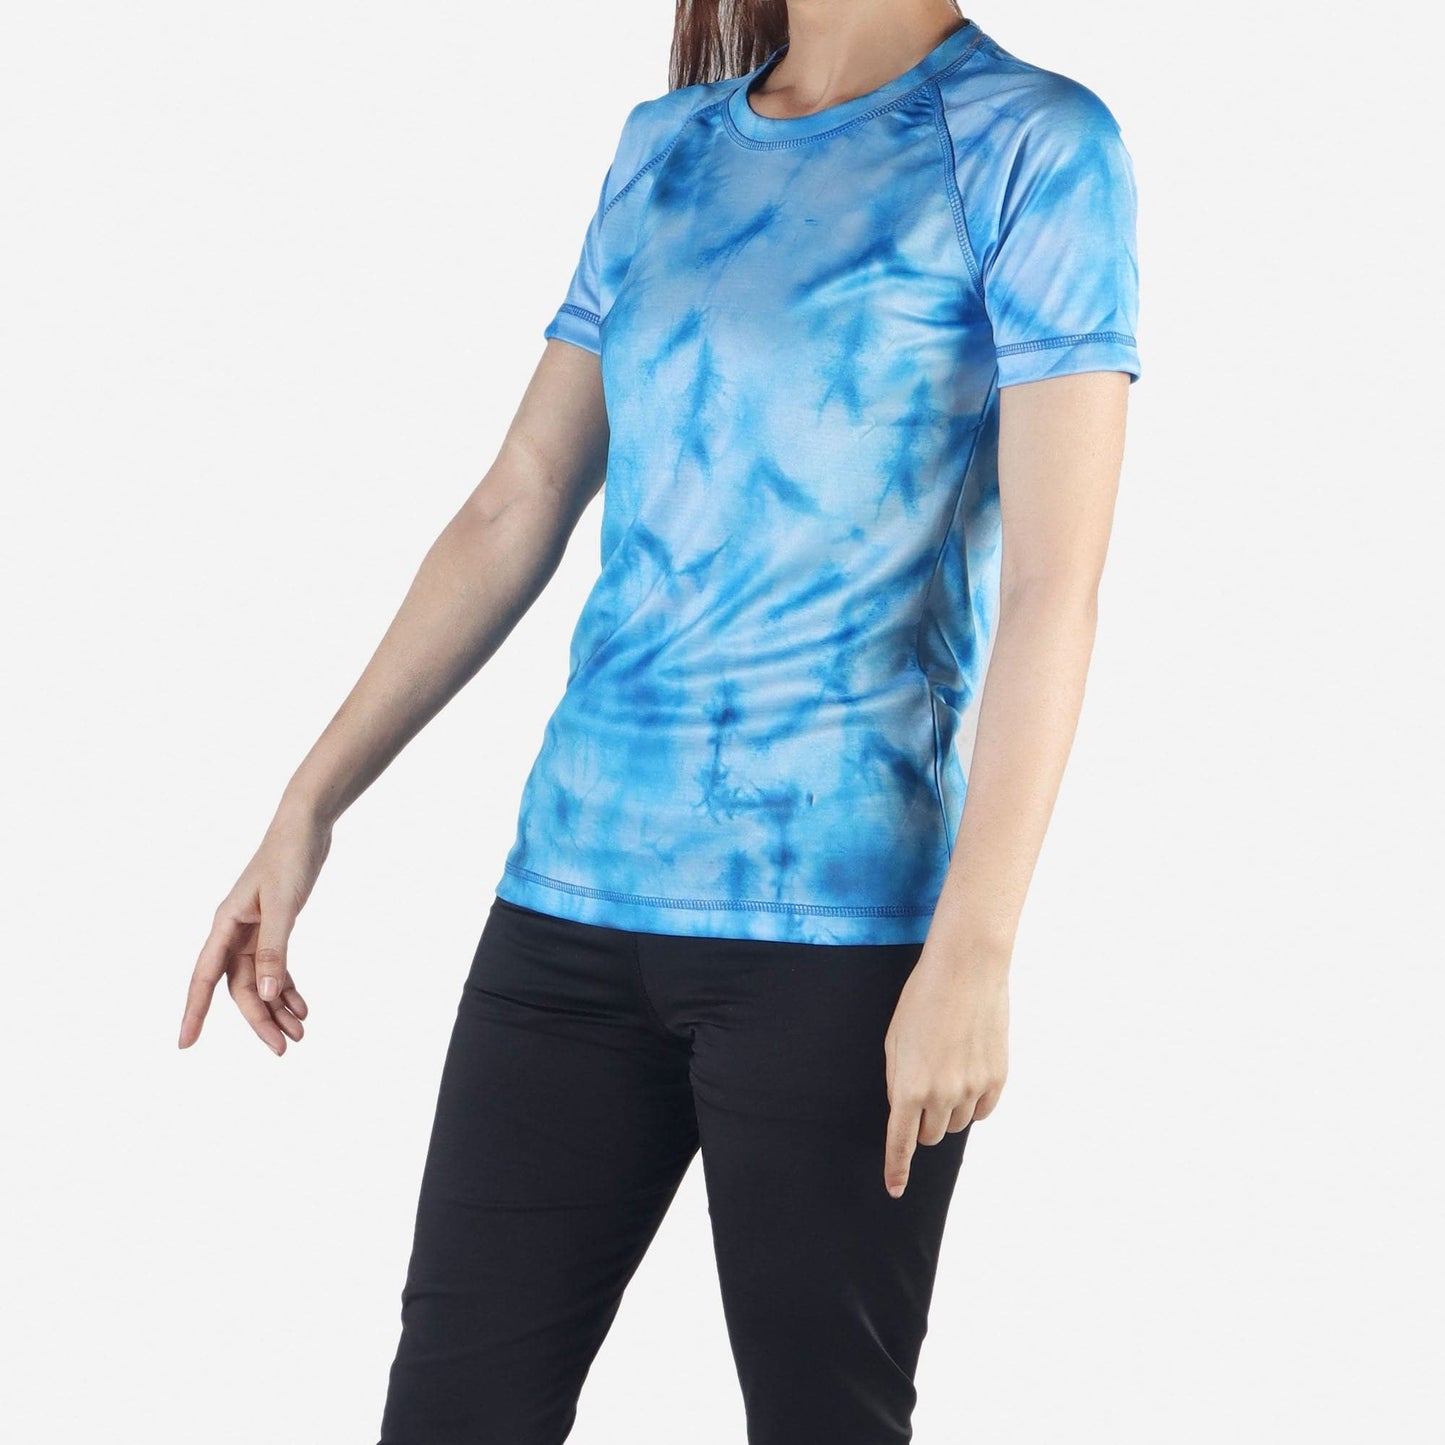 Women’s Short Sleeve Workout Activewear T-Shirt - Blue - Valetica Sports